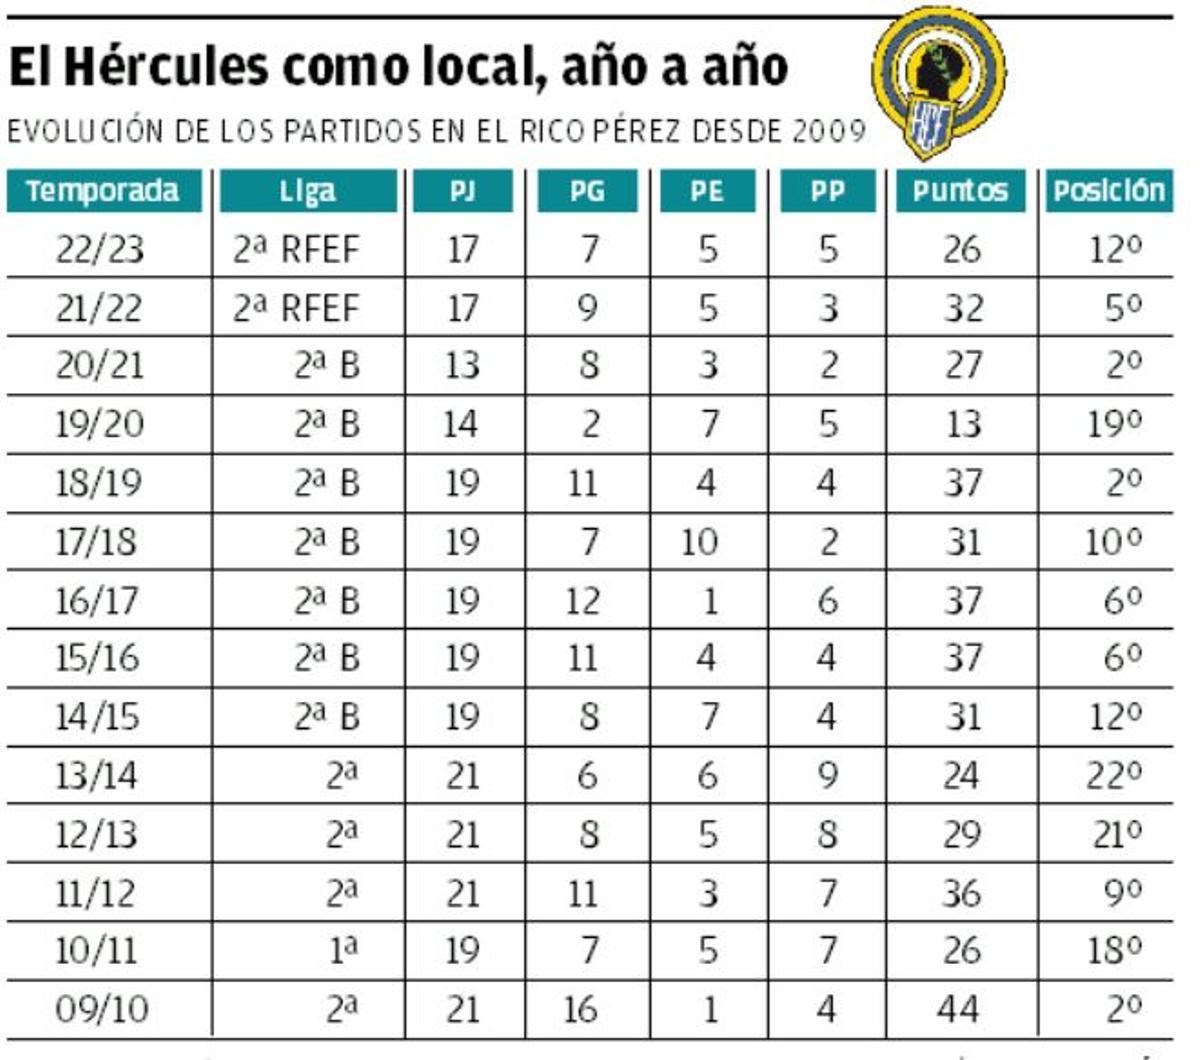 Datos del Hércules como local desde 2009